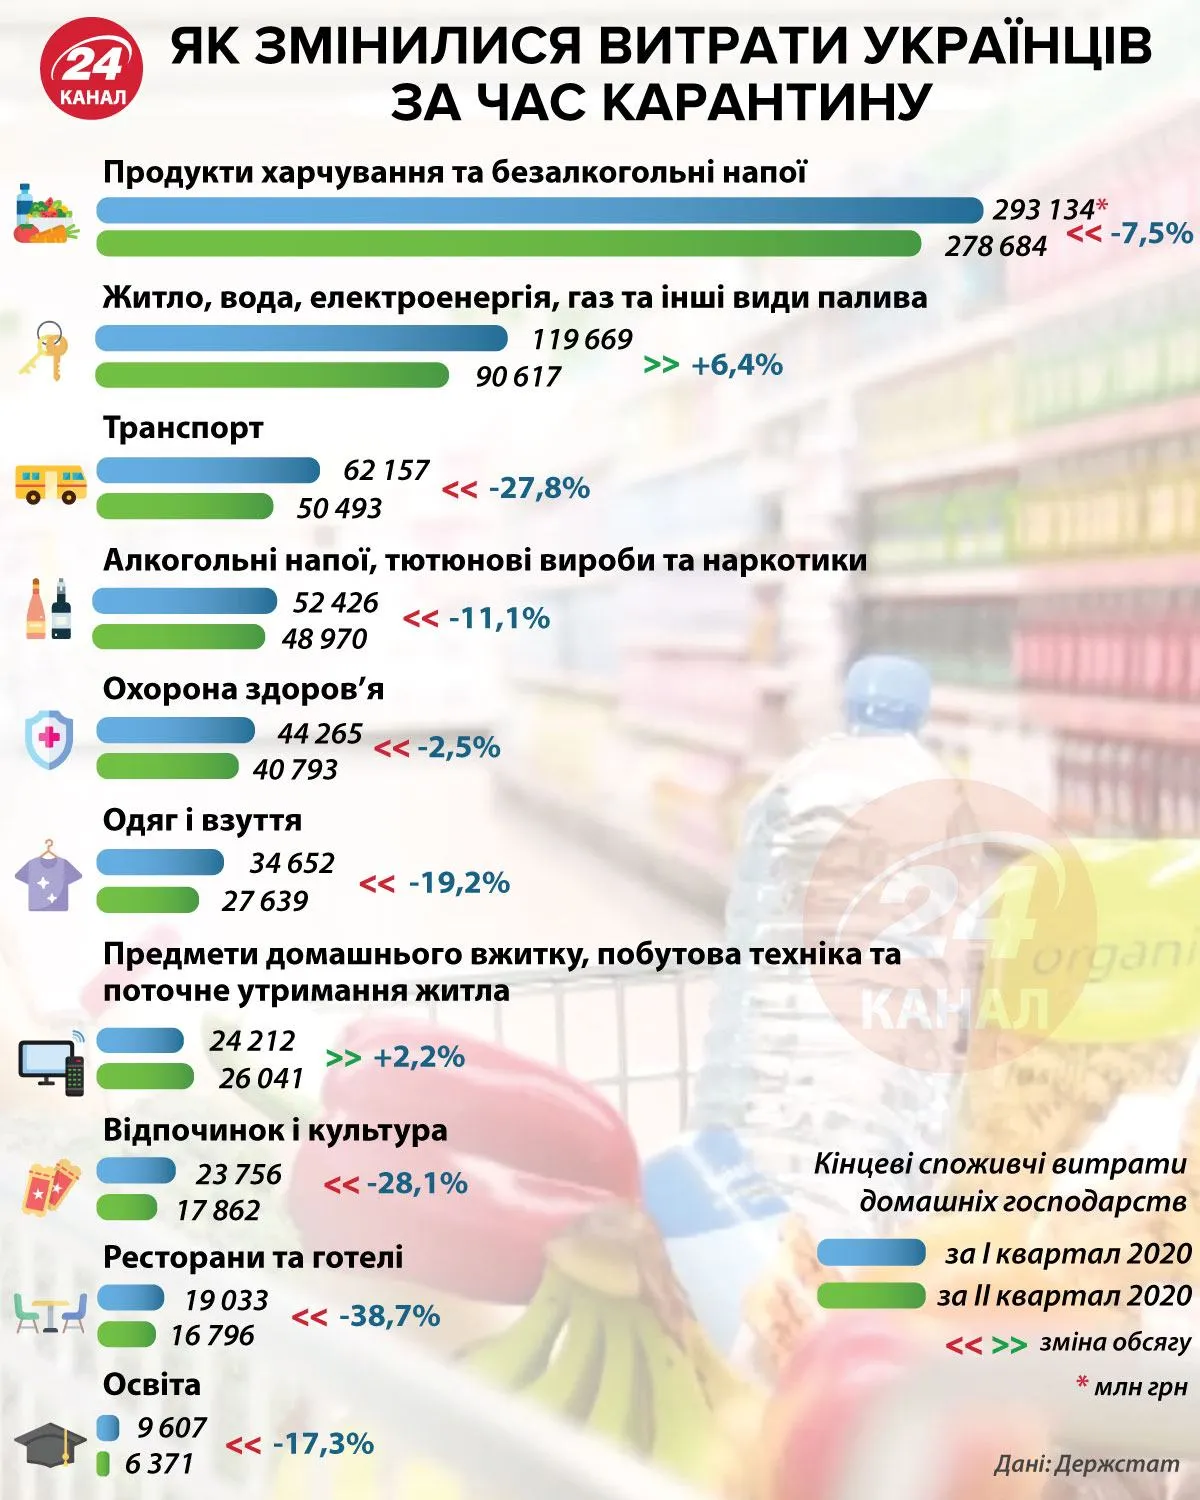  Расходы украинцев за время карантина инфографика 24 канала